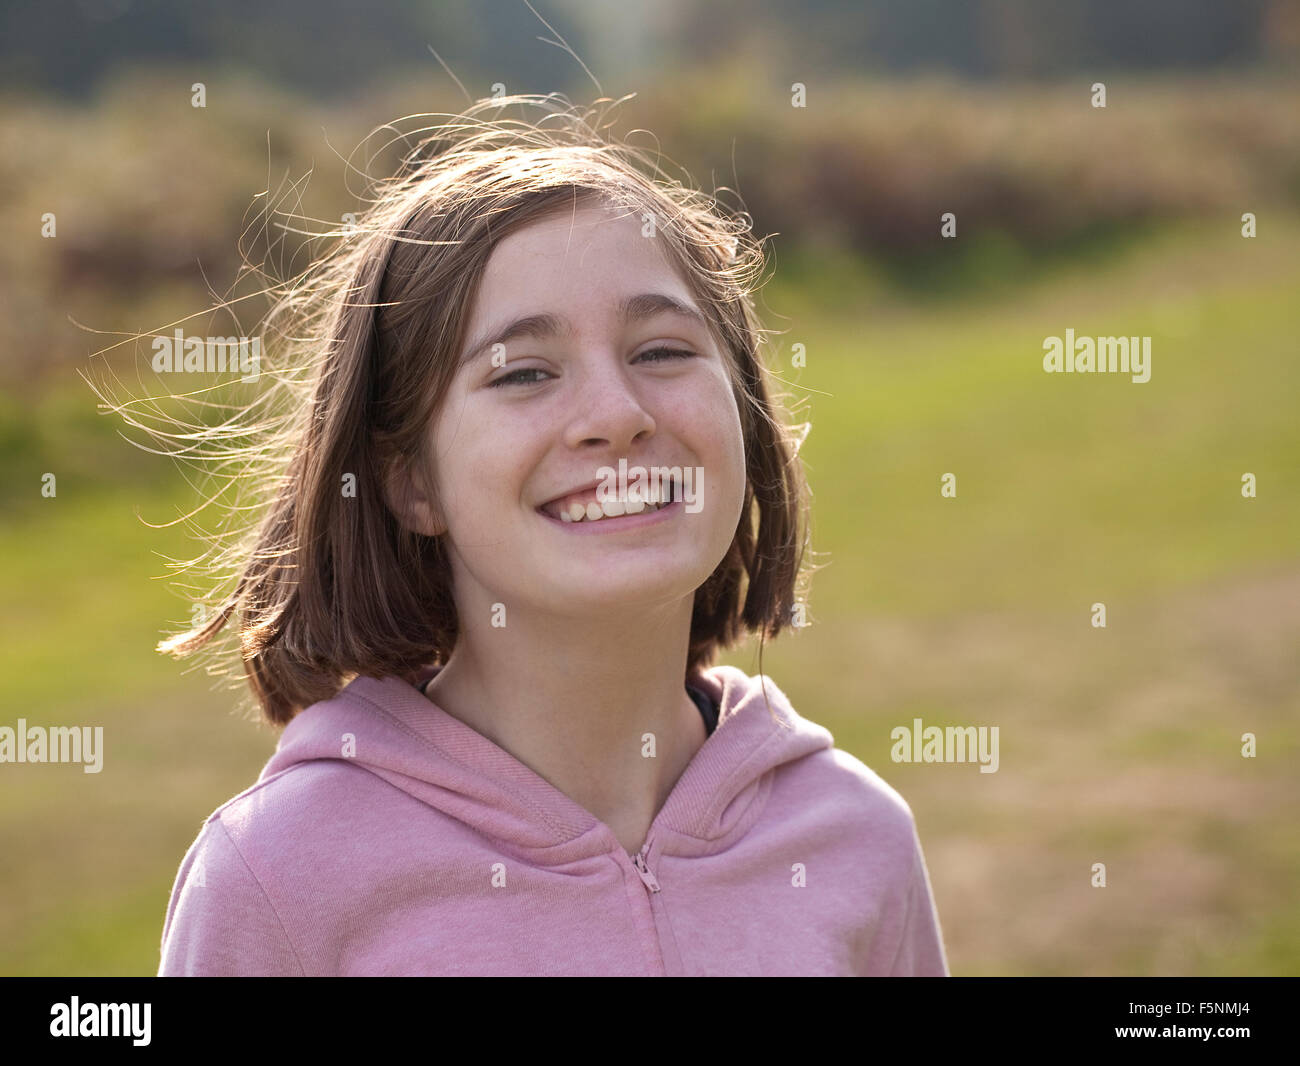 Sono contento. Una giovane ragazza sorridente, undici anni, è retro illuminato dal sole che mostra il suo volare lontano i capelli. Foto Stock